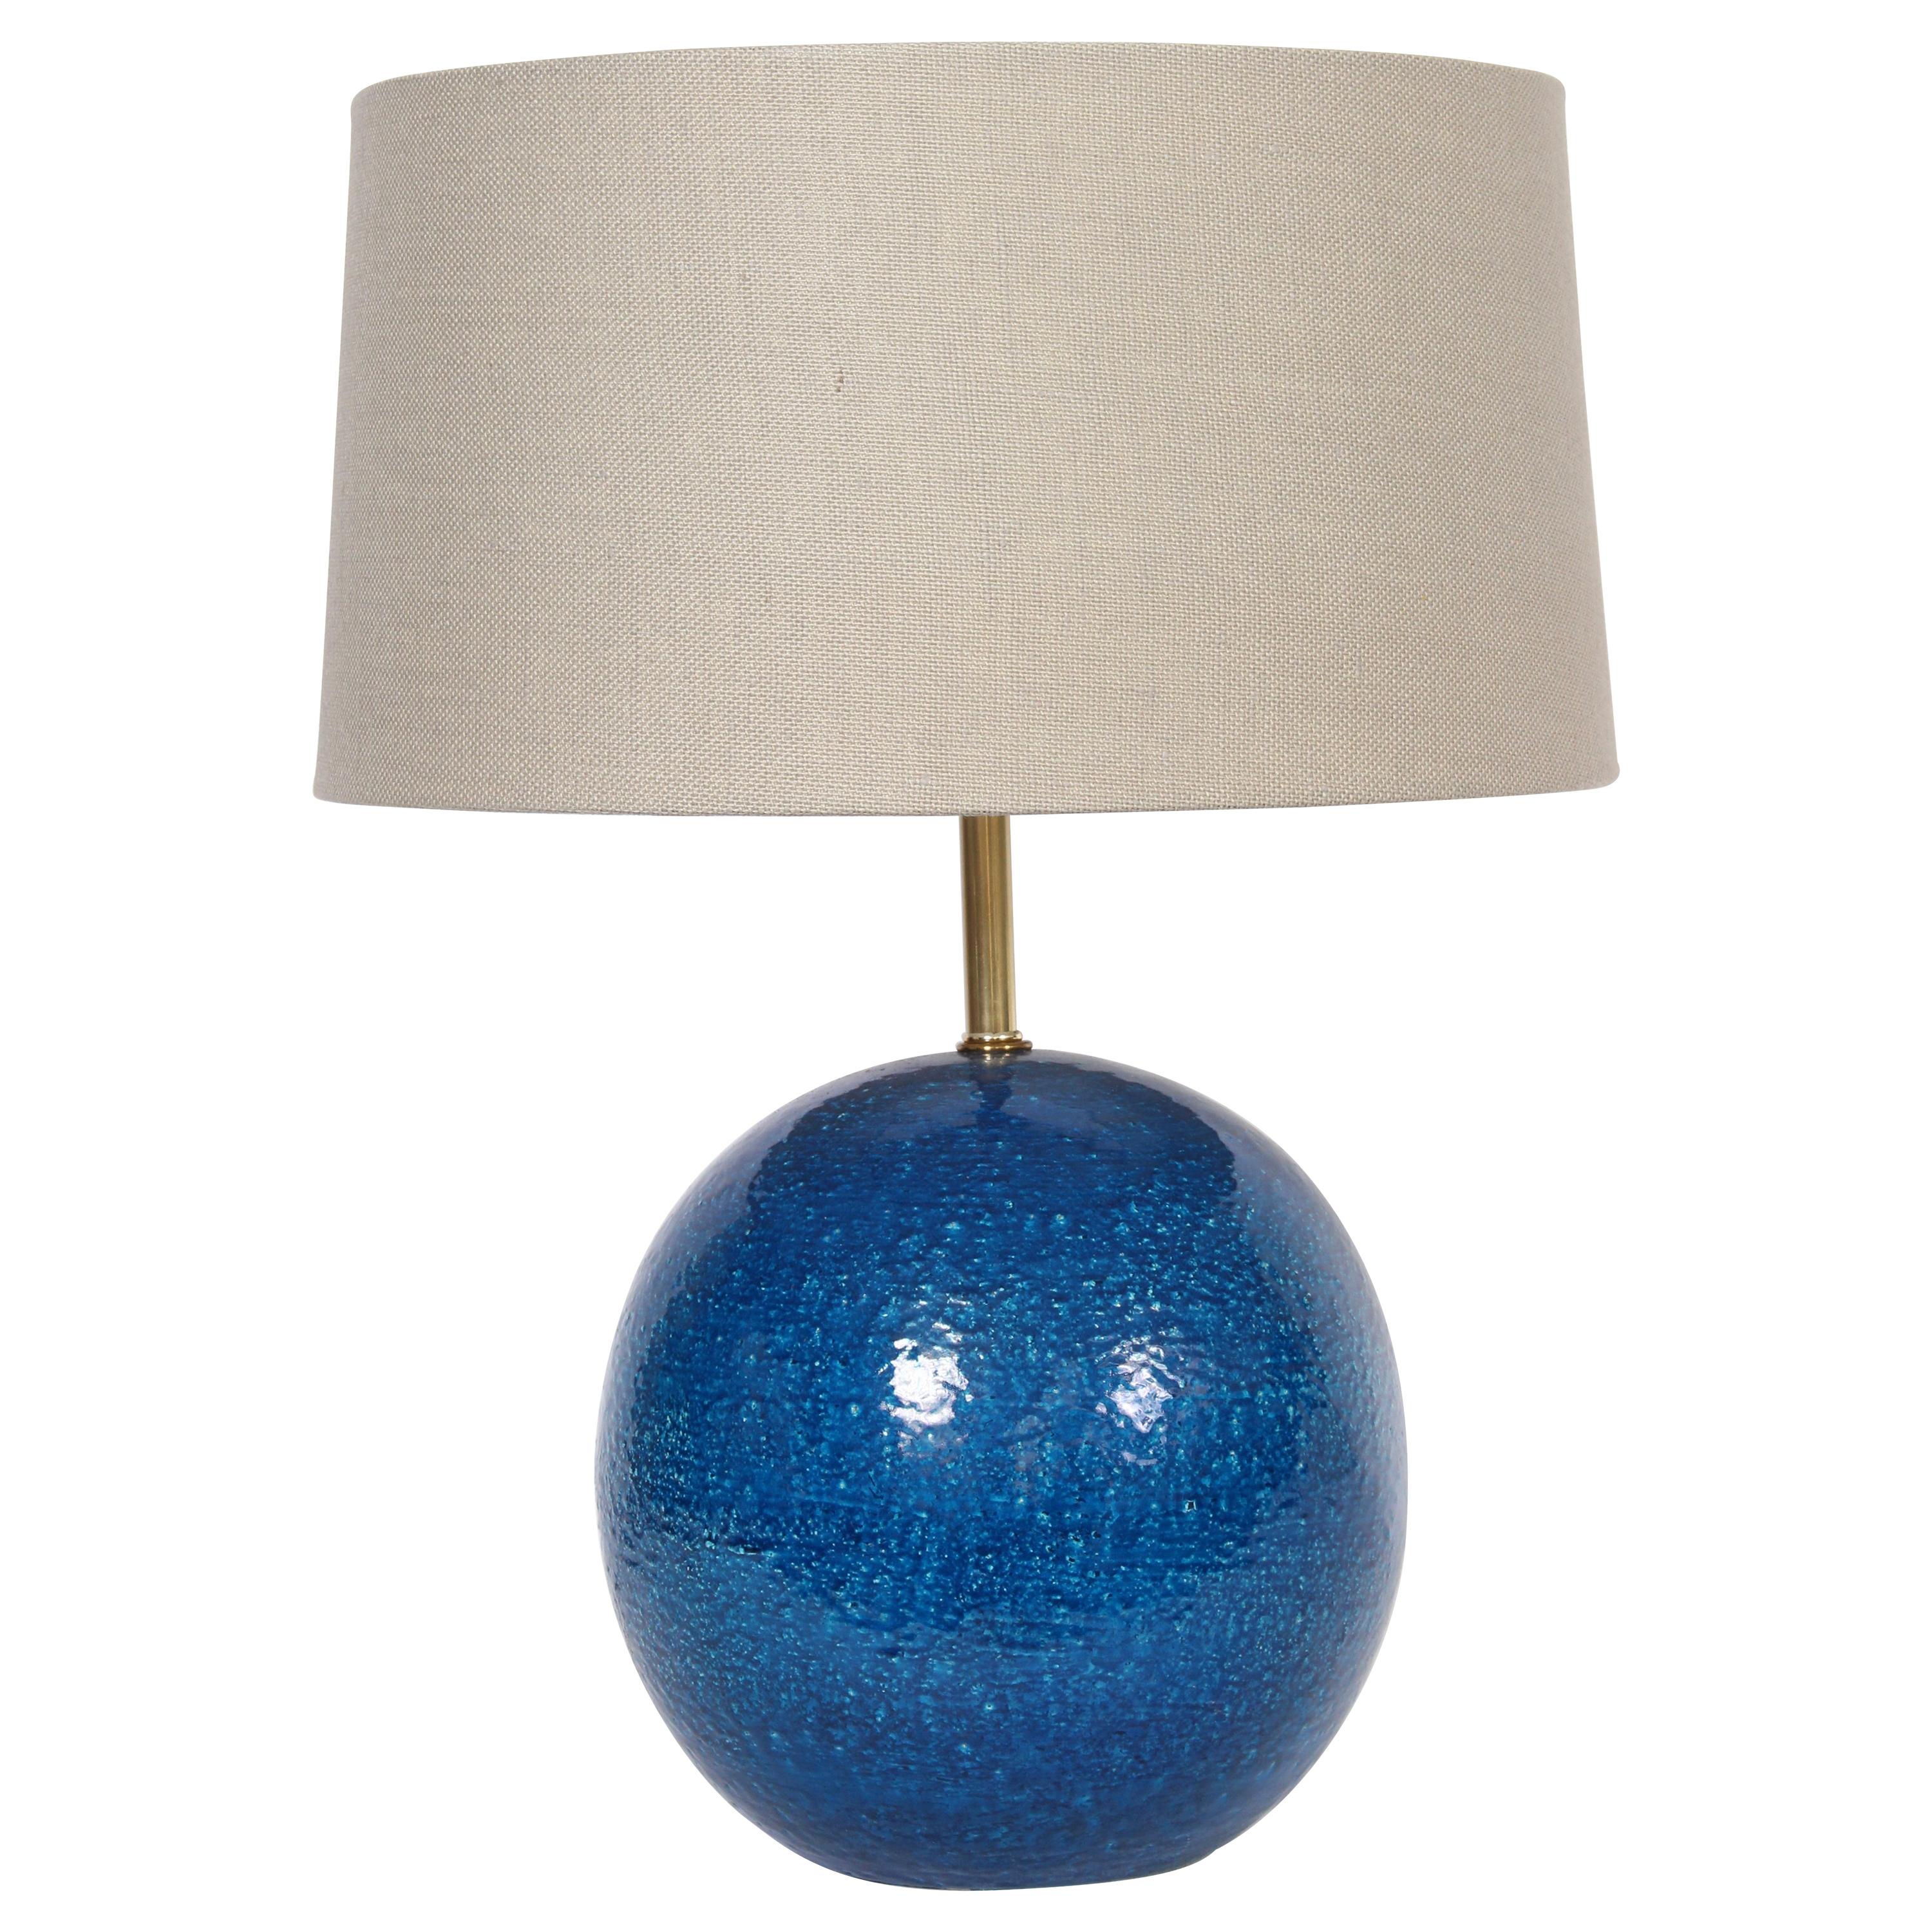 Lampe de bureau en poterie bleue persane « Ball » d'Aldo Londo pour Bitossi, vers les années 1950